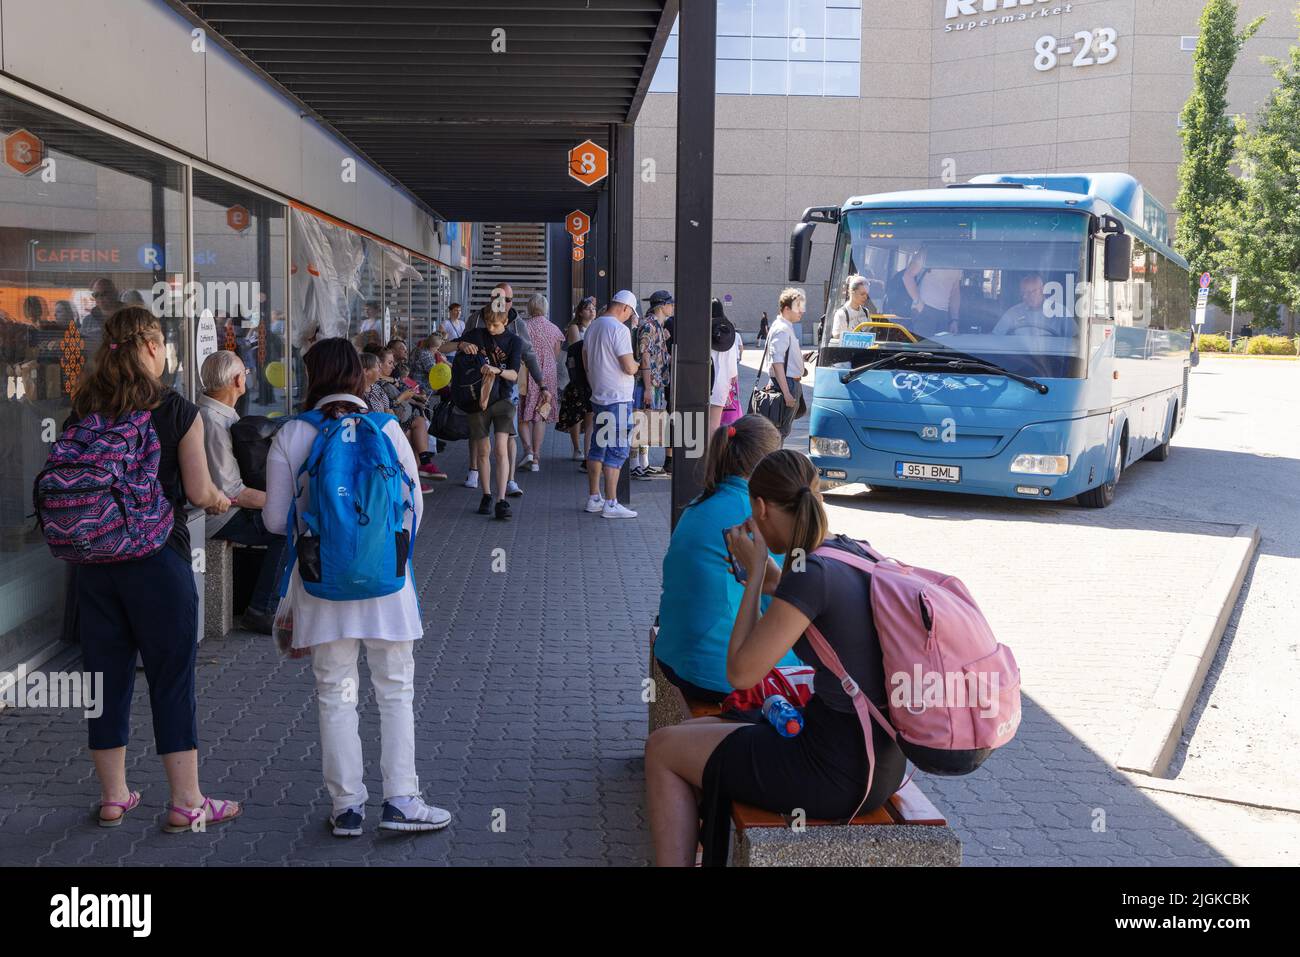 Estland öffentliche Verkehrsmittel - Estnische Menschen warten auf einen Bus am Busbahnhof Tartu, Tartu, Estland Europa Stockfoto